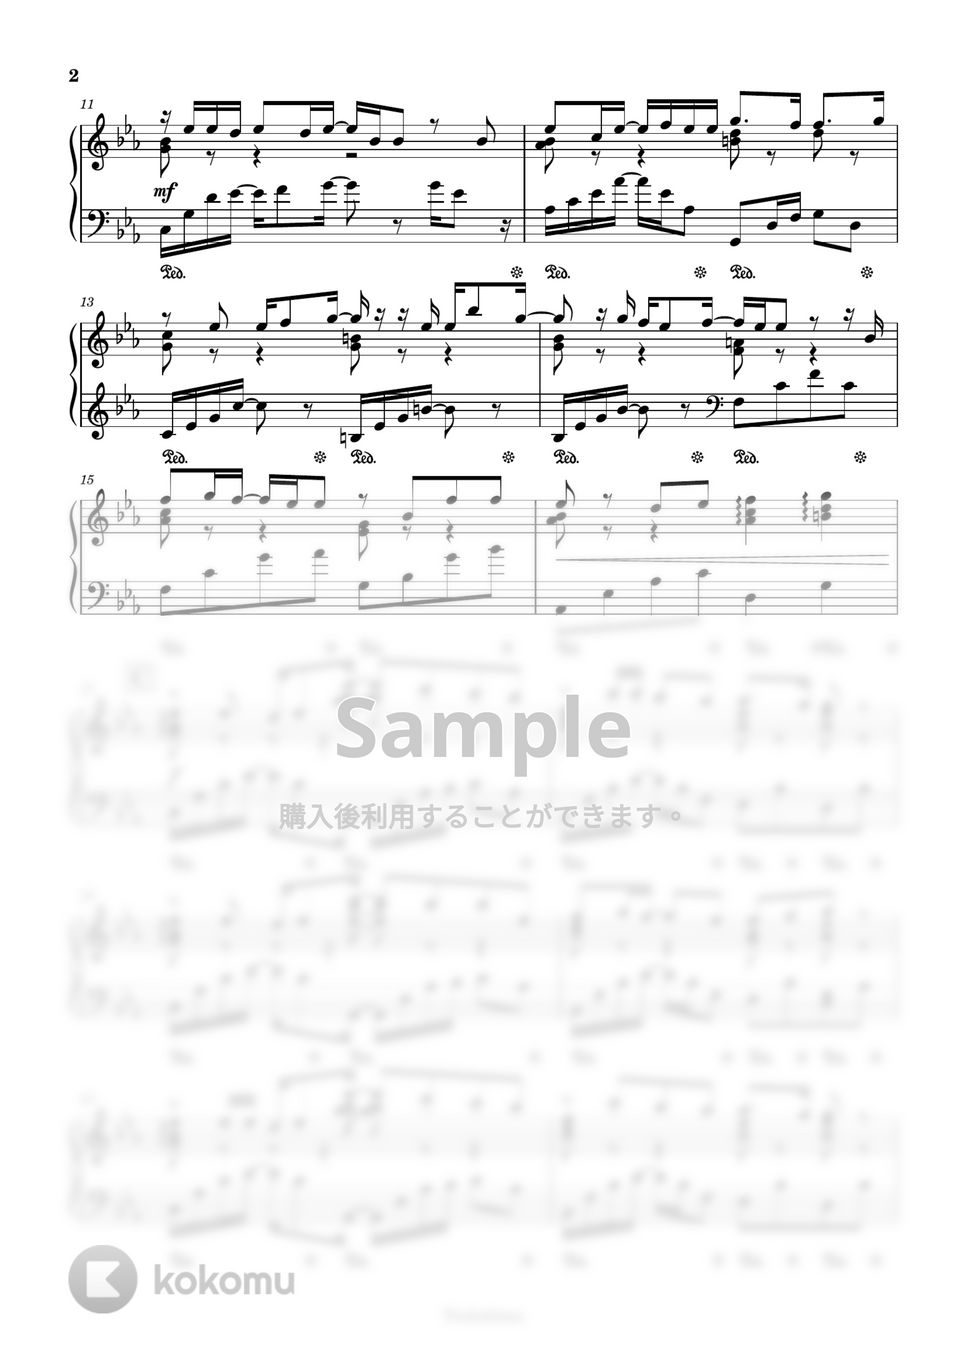 M2U x ダズビー - 夜明けの歌 (音楽ゲームアプリ「DEEMO」) by Trohishima